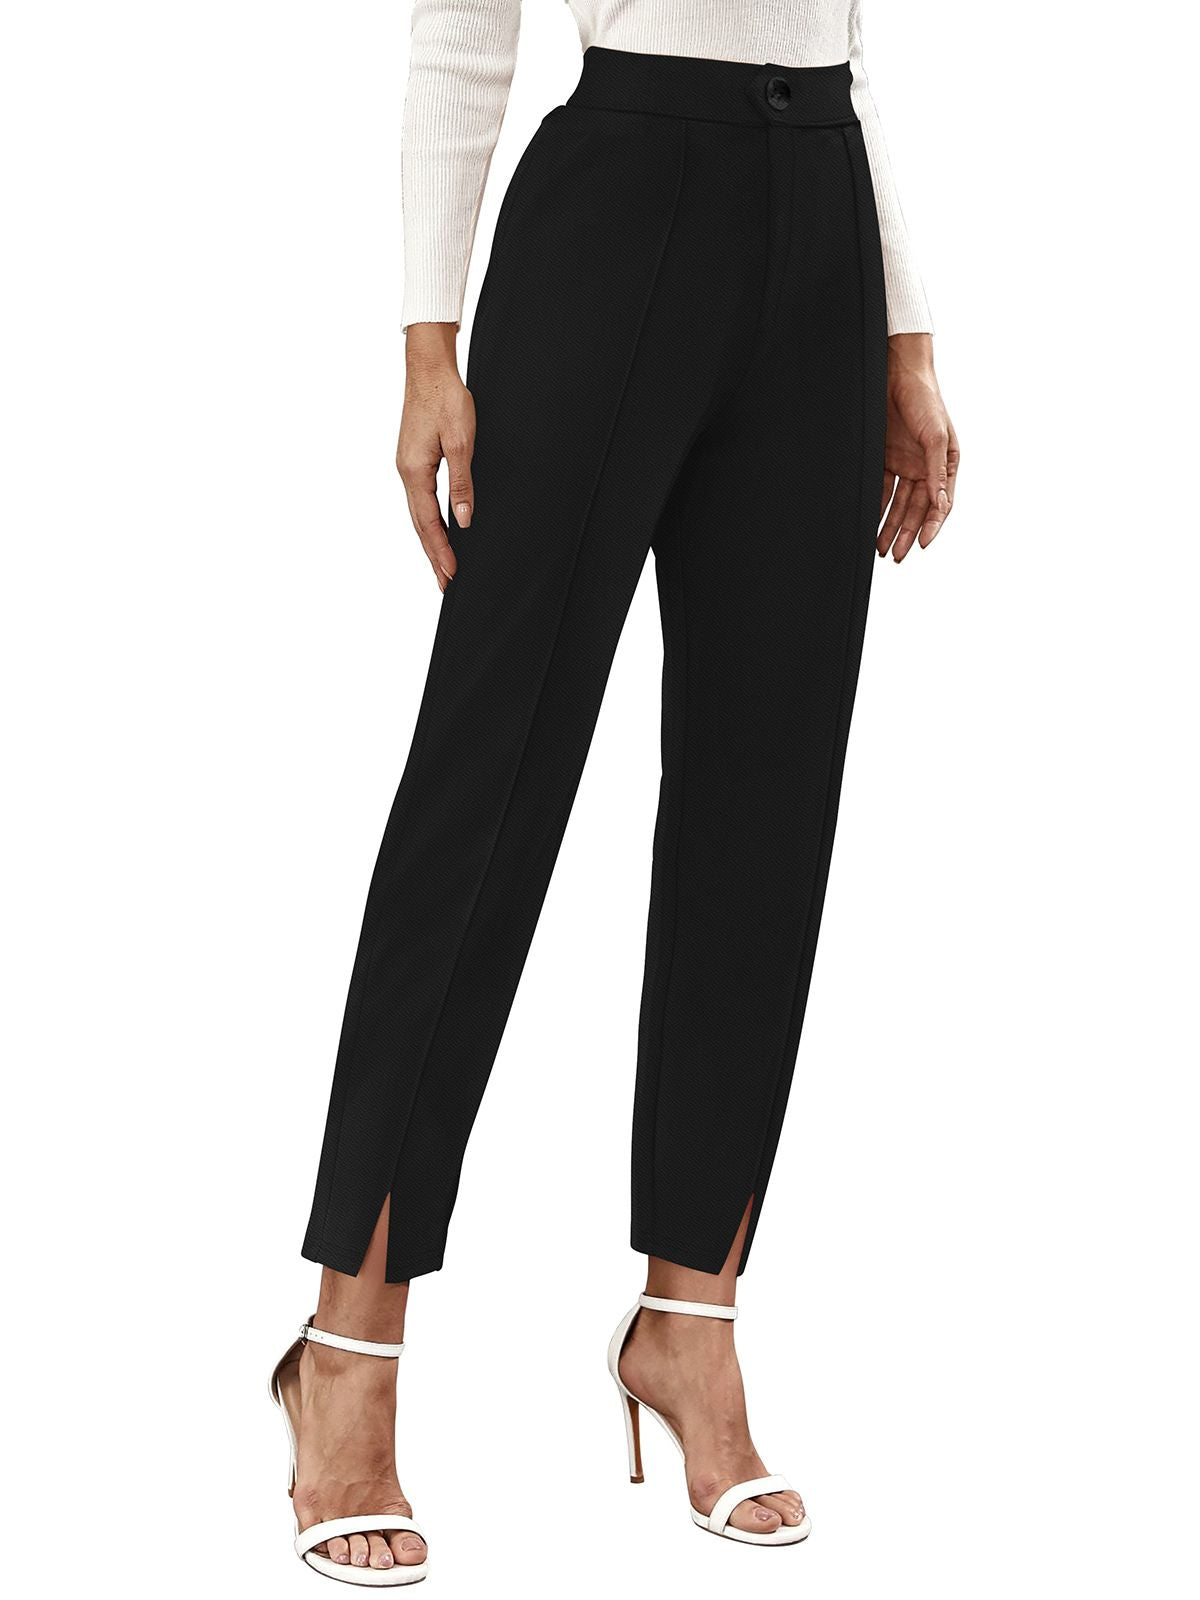 Odette Black Polyester Trouser For Women